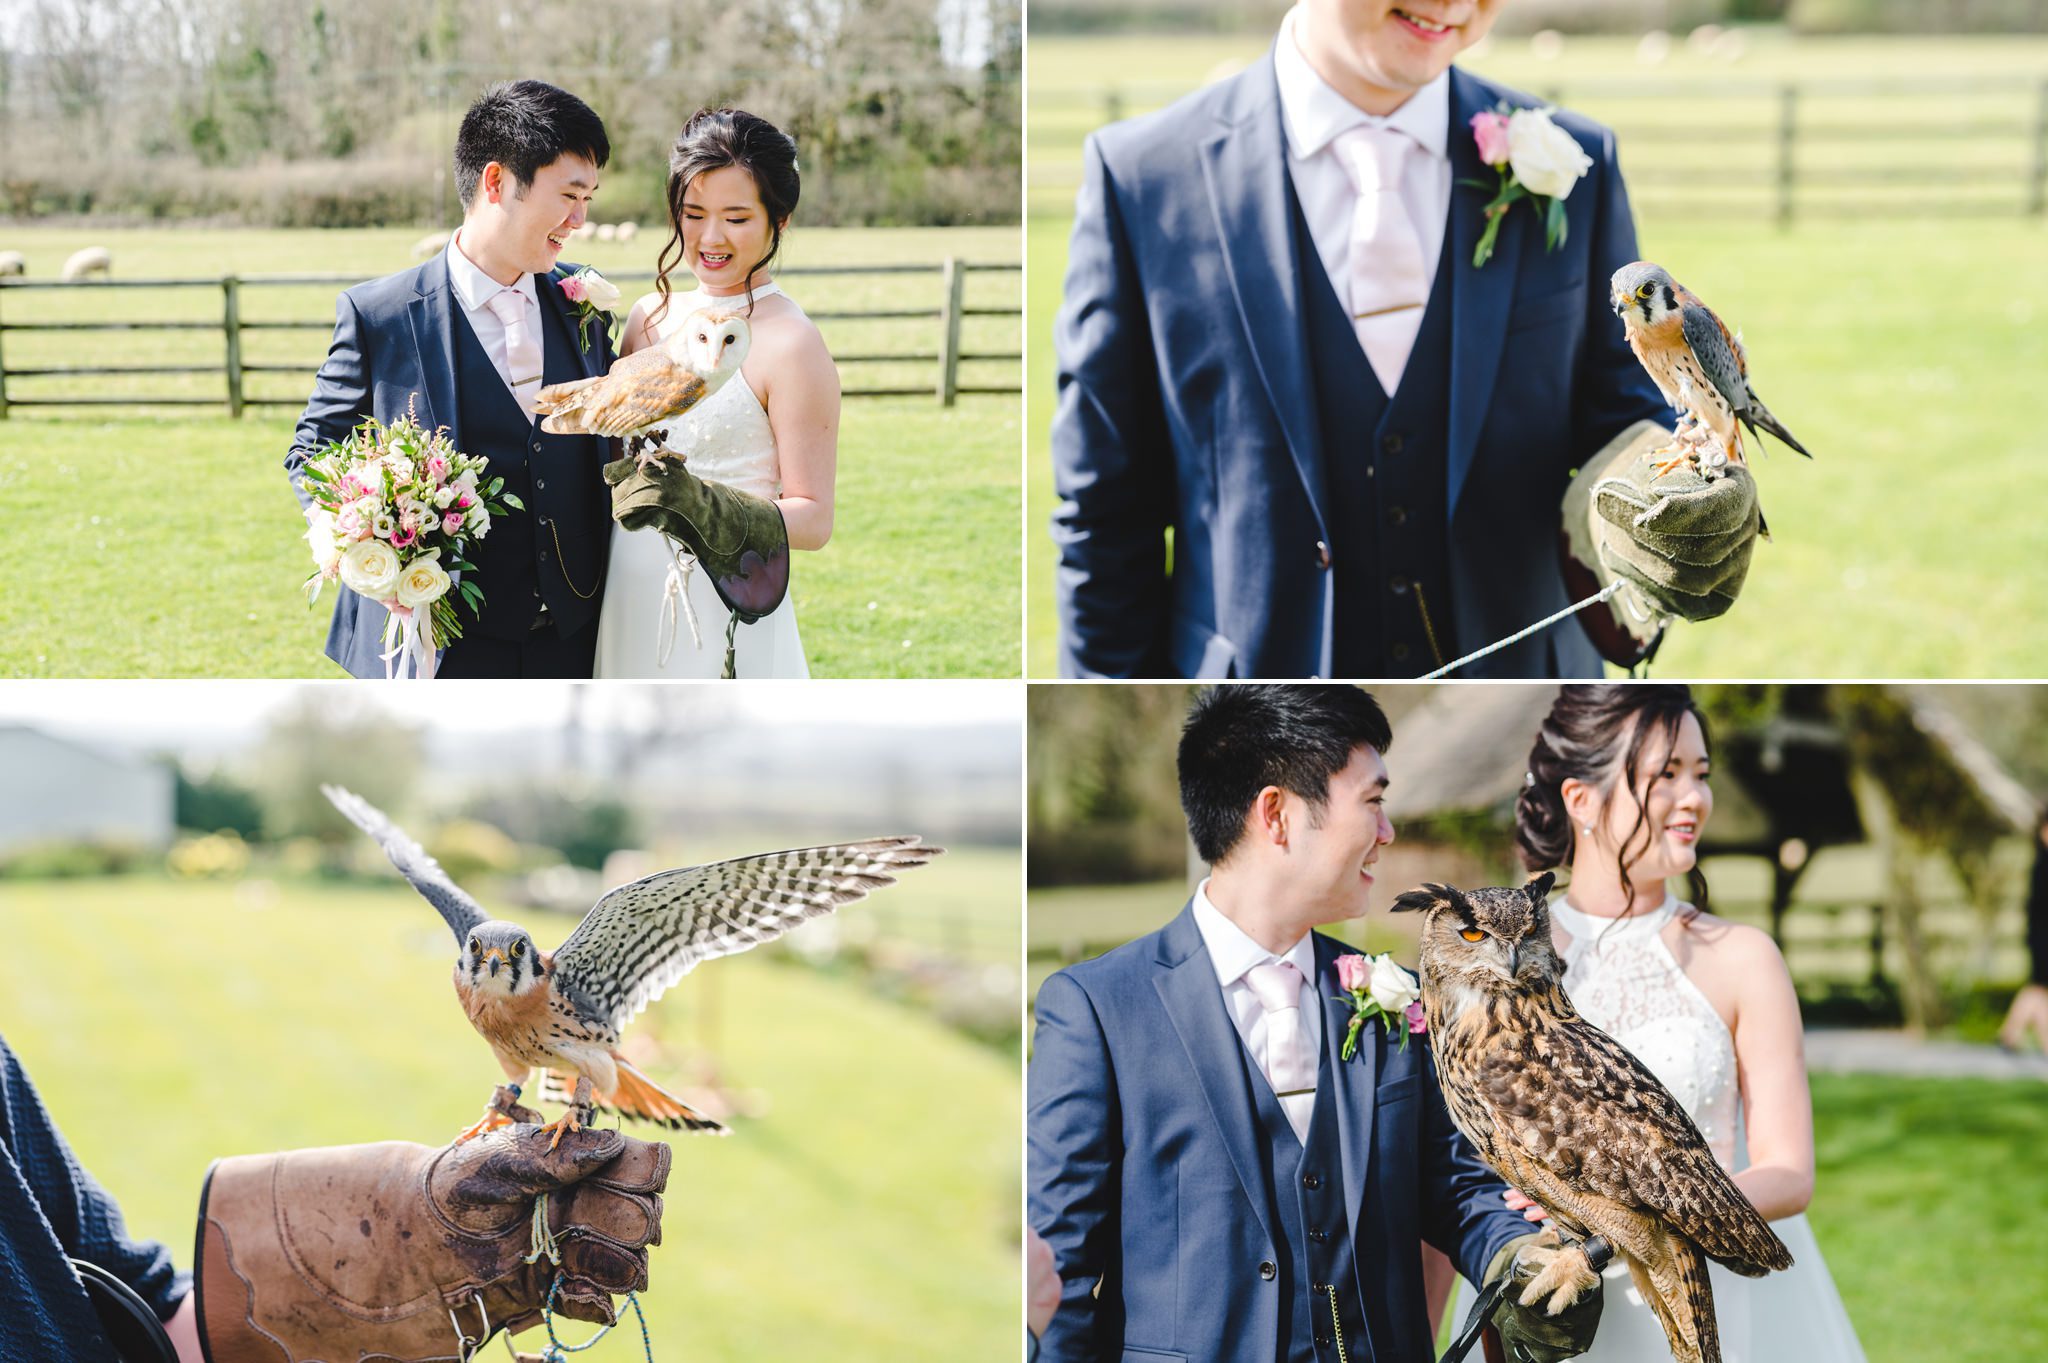 Birds of prey at a wedding